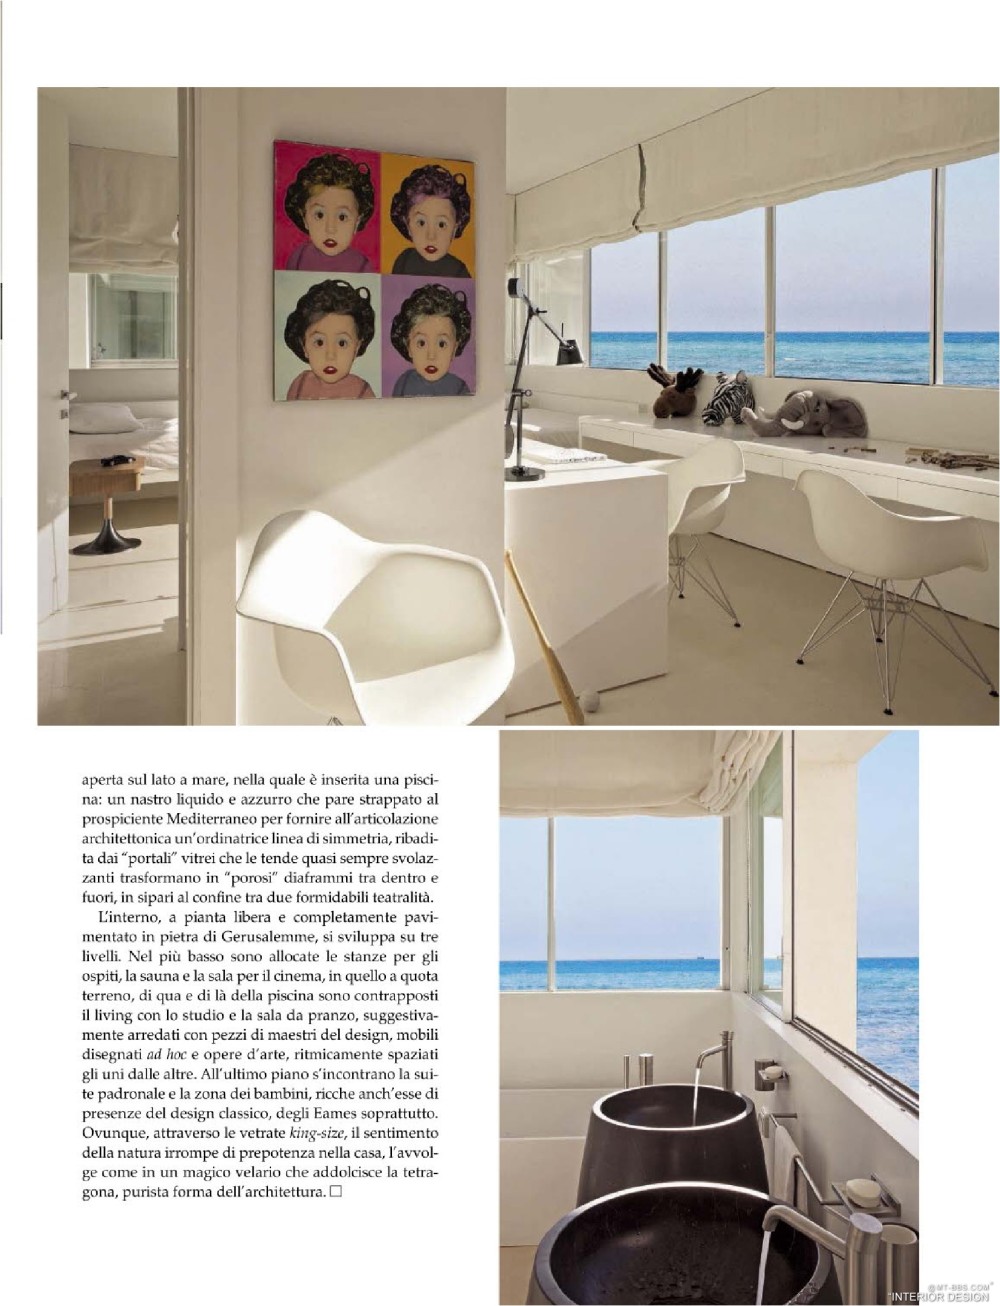 意大利AD 杂志 2012年全年JPG高清版本 全免（上传完毕）_0163.jpg